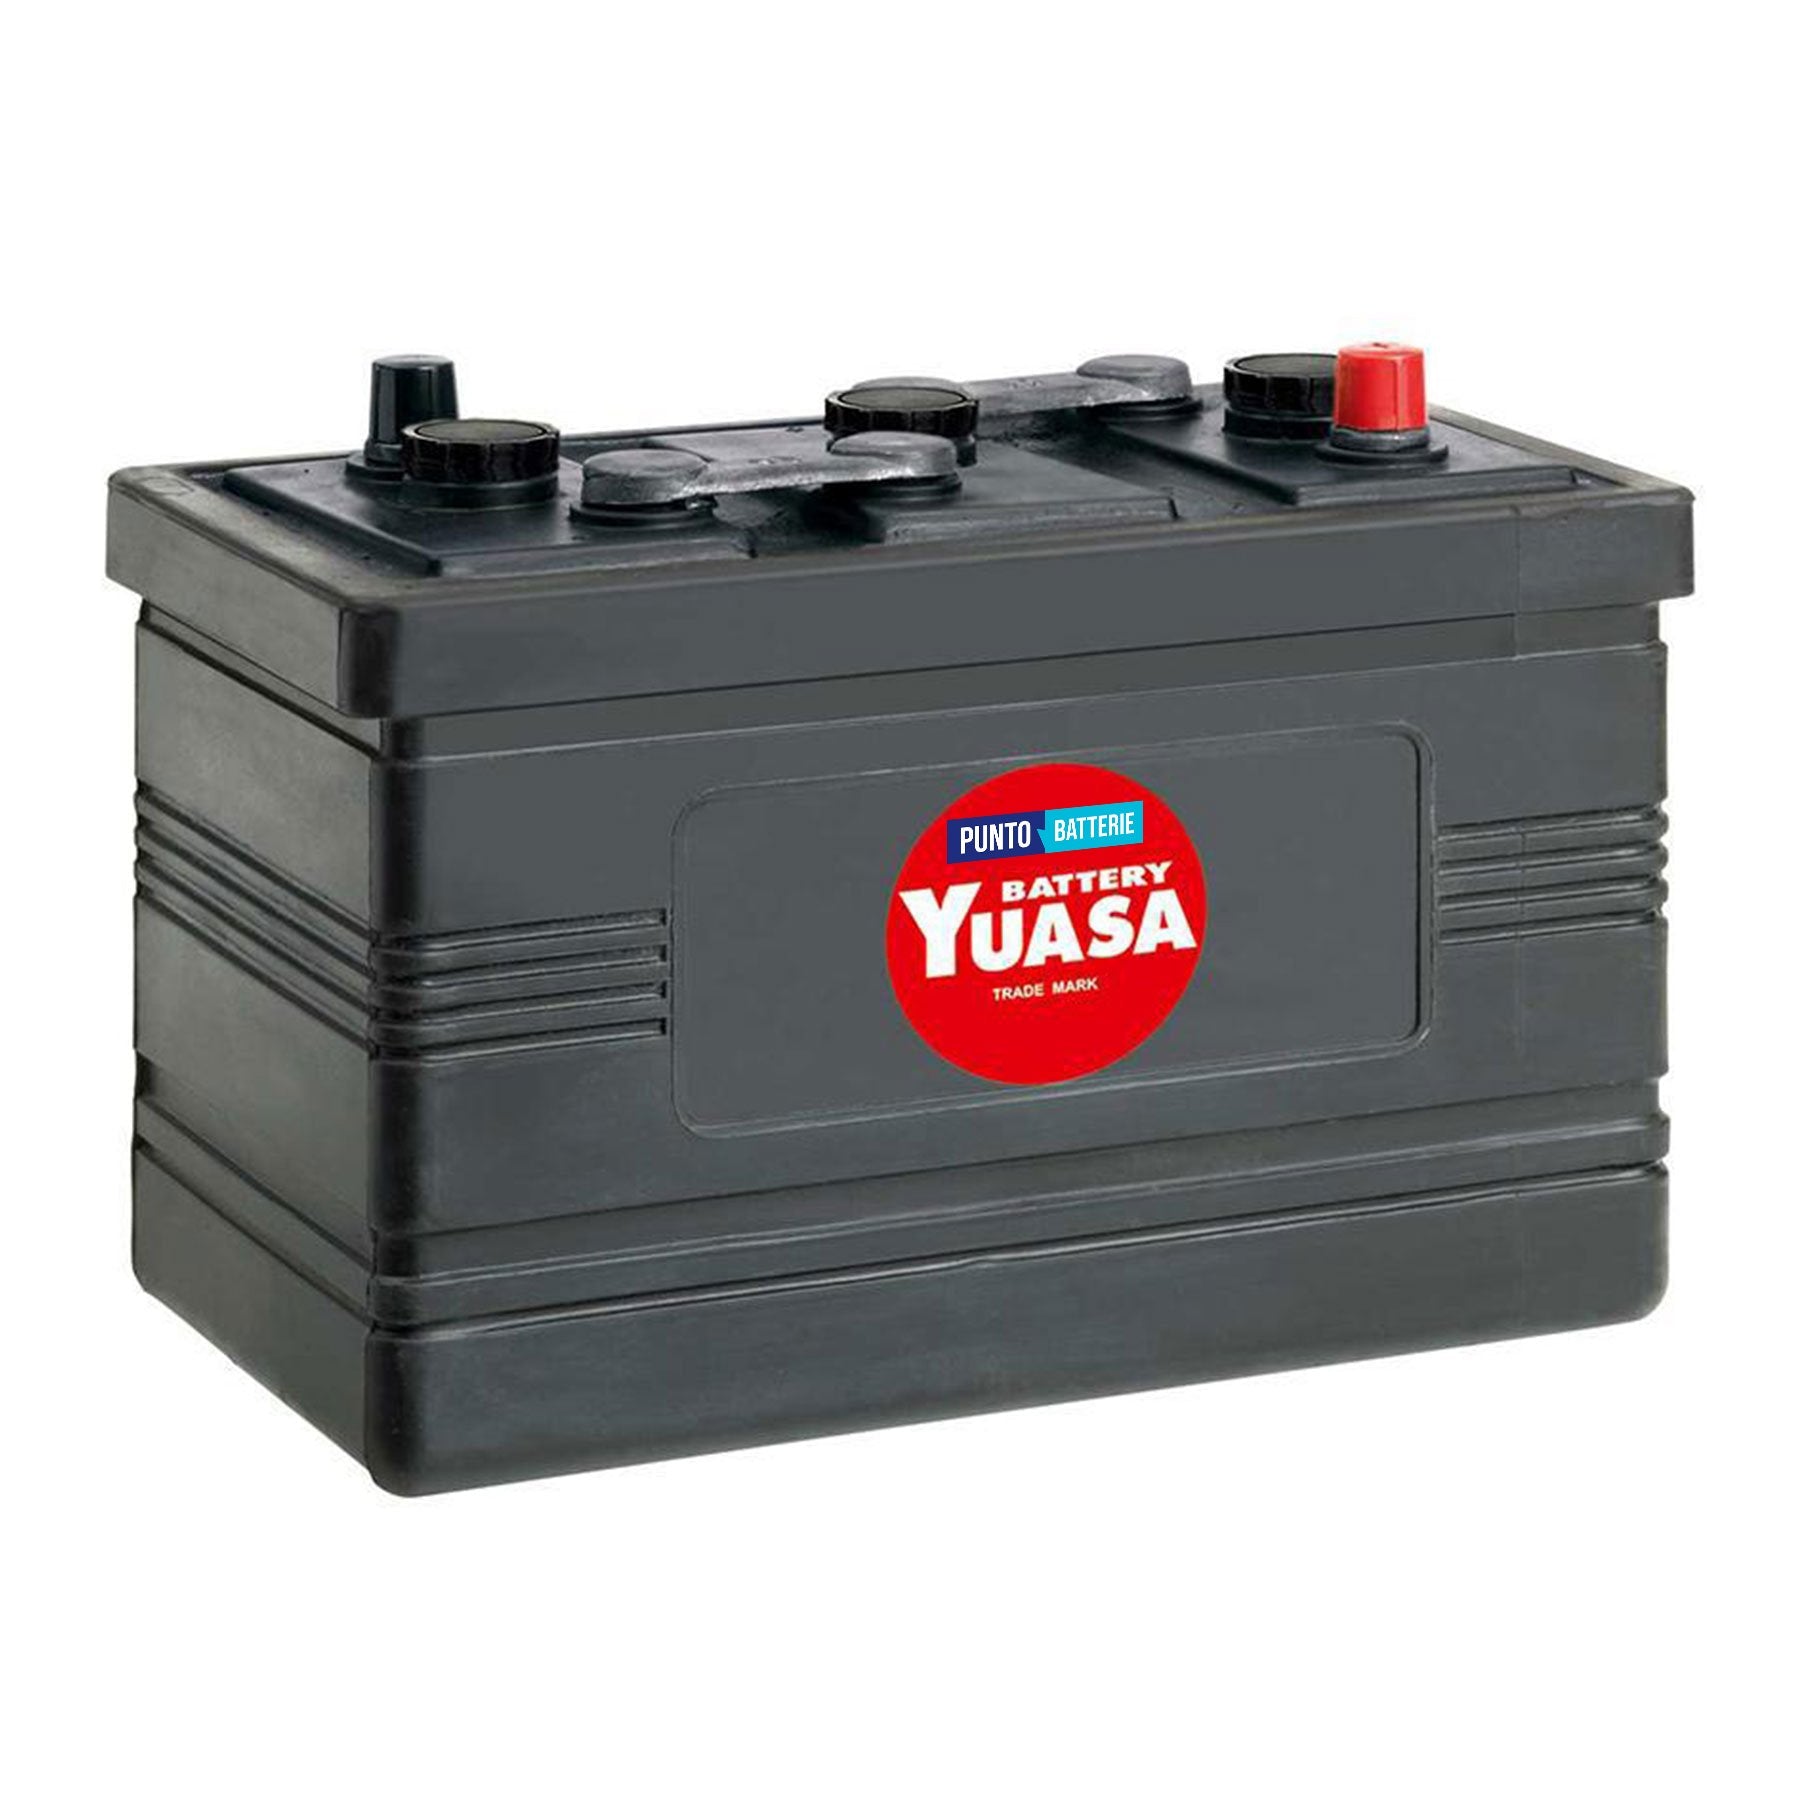 Batteria originale Yuasa Classic e Oldtimer 531, dimensioni 319 x 170 x 226, polo positivo a destra, 6 volt, 135 amperora, 630 ampere. Batteria per veicoli d'epoca.